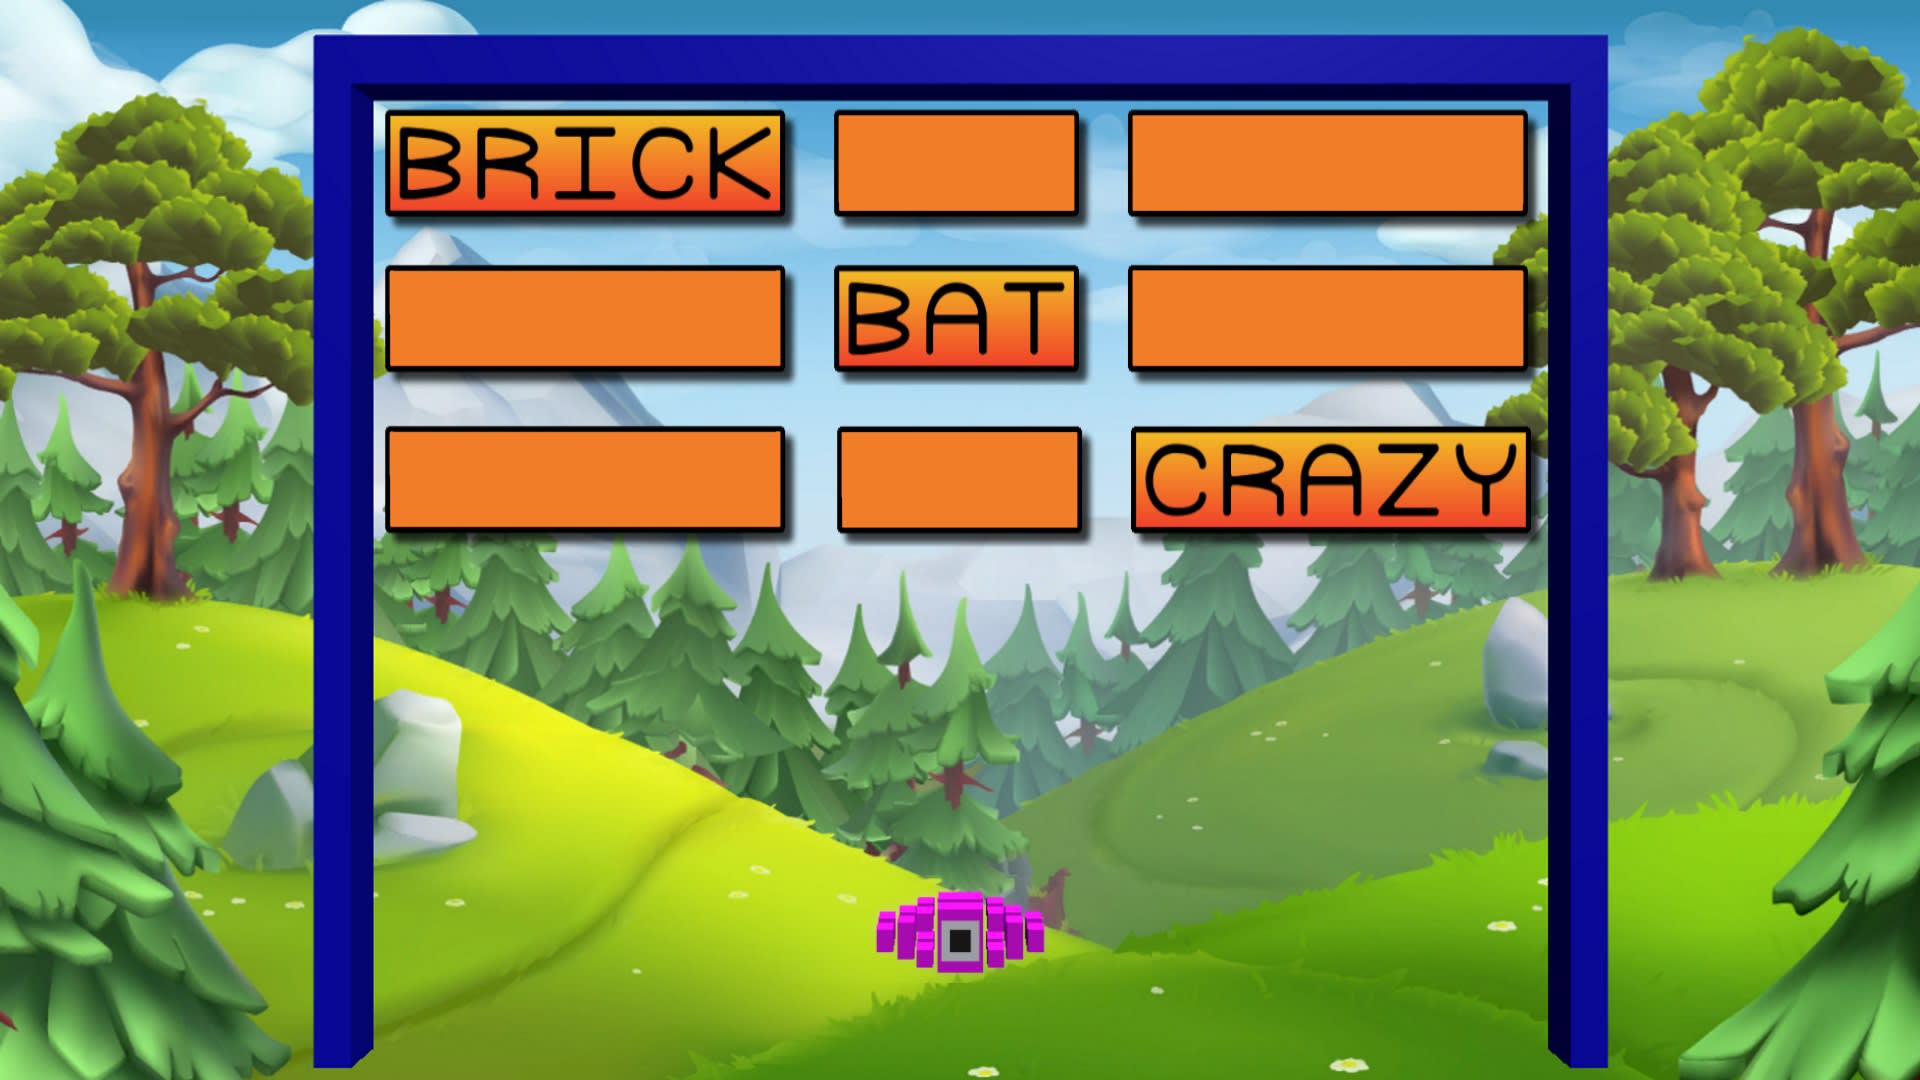 Brick Bat Crazy